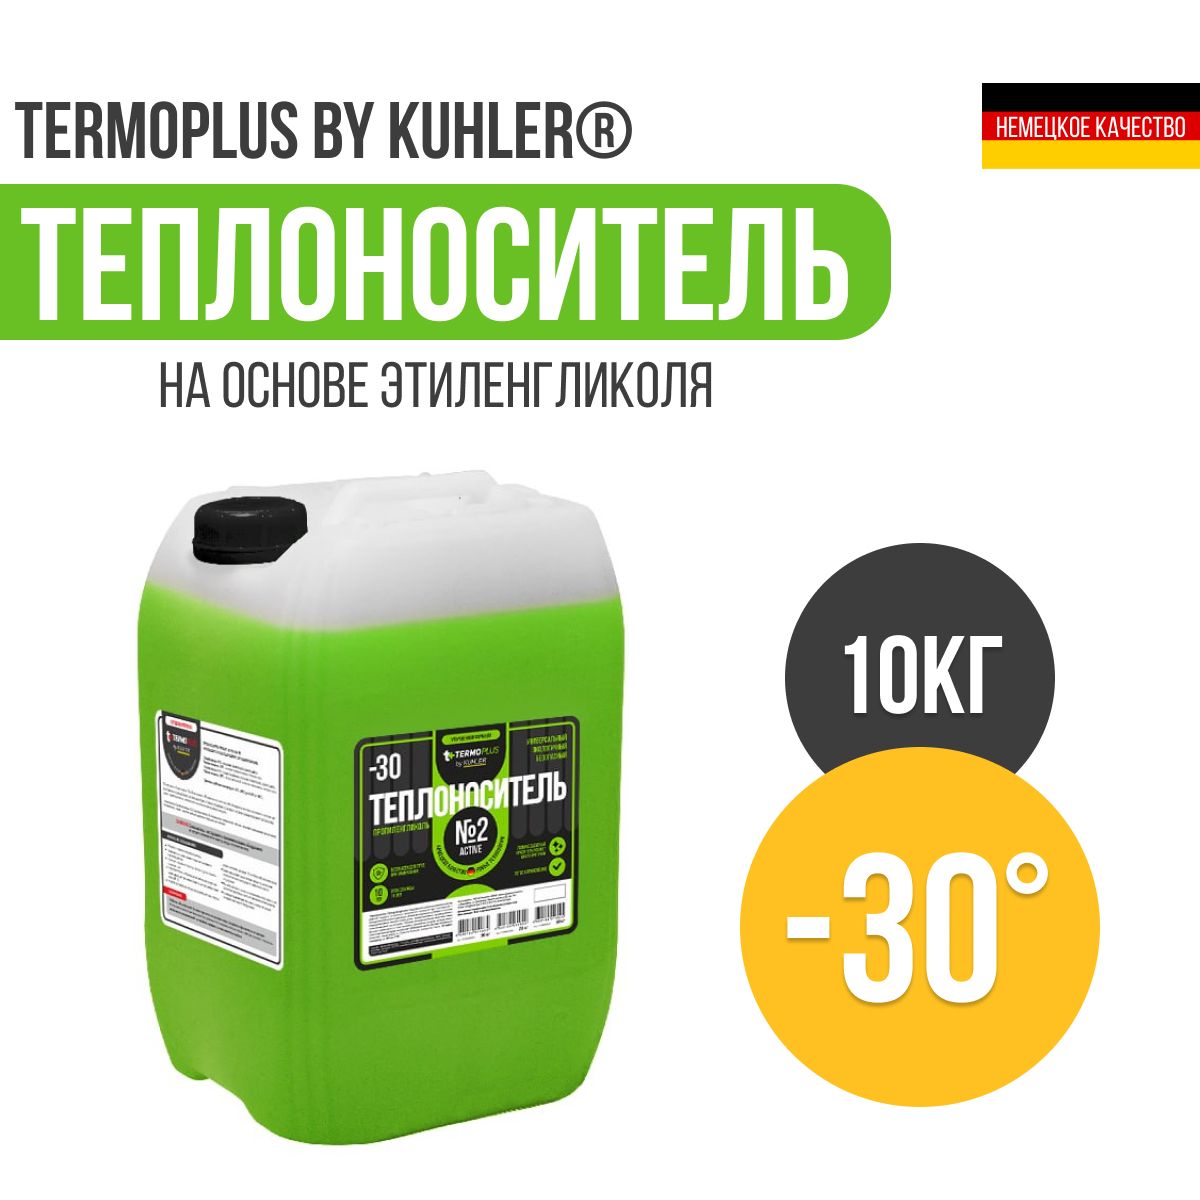 средство для очистки теплообменных поверхностей thermagent active 645465 10 кг концентрат Теплоноситель 2 Active Теrmoplus by Kuhler пропиленгликоль -30 (10 кг)